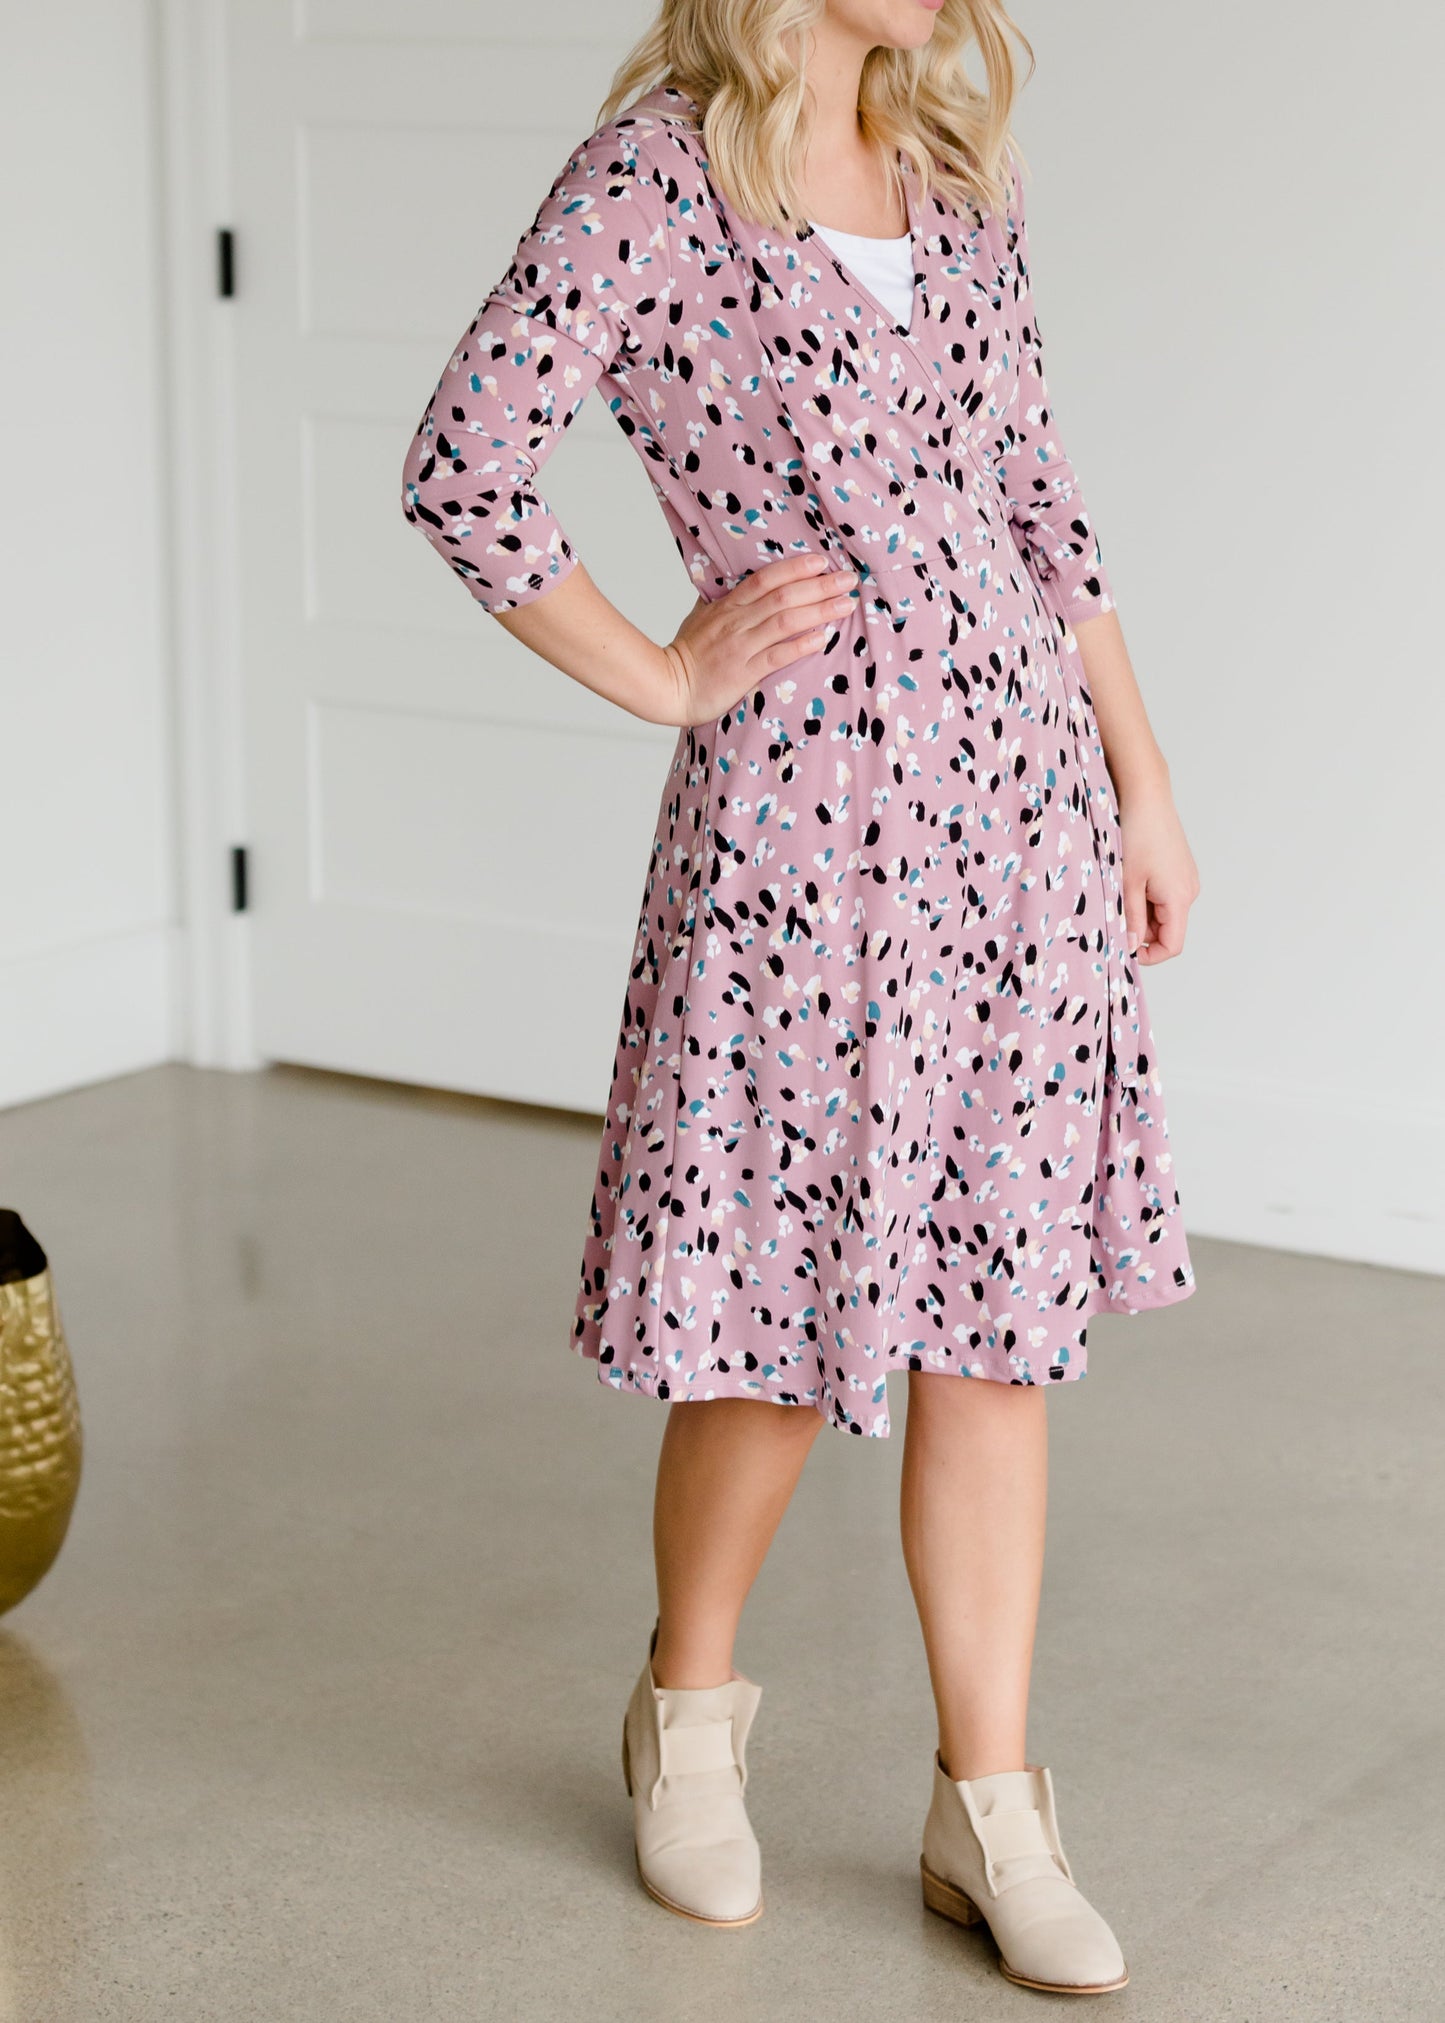 Floral Faux Wrap Midi Dress - FINAL SALE Dresses